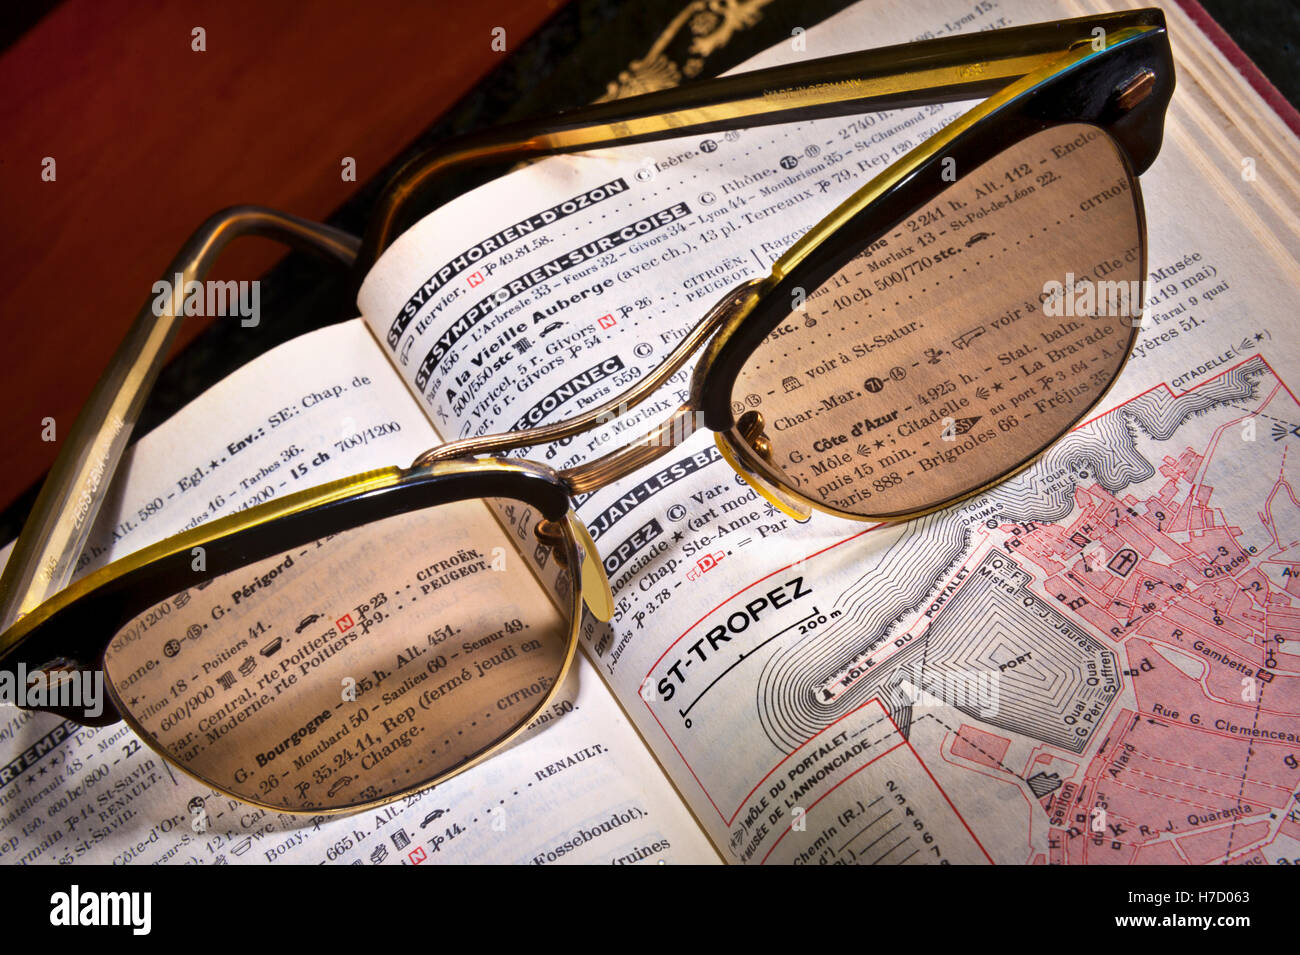 Die SAINT TROPEZ 1950 Vintage Retro Zeiss Sonnenbrille auf 1950s-60s Französisch Michelin Reiseführer Buch auf St-Tropez Seite Cote d'Azur Frankreich Stockfoto